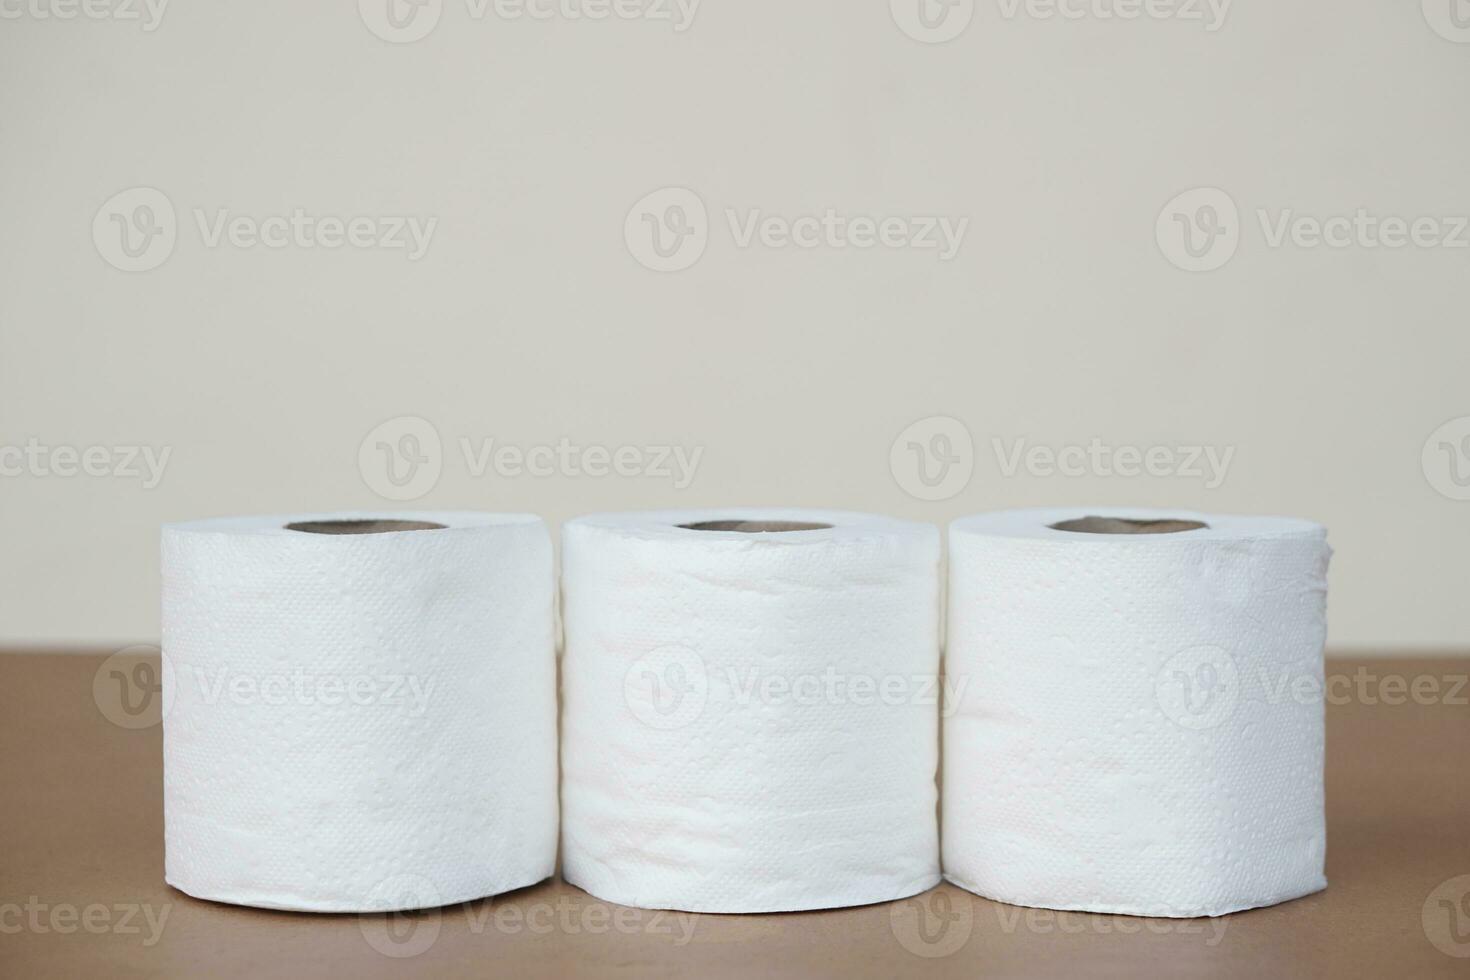 Tres rollos de suave blanco baño pañuelo de papel papel. concepto, higiénico y sanitario materiales para después utilizando baño o baño. útil y versátil para limpieza y limpiando foto